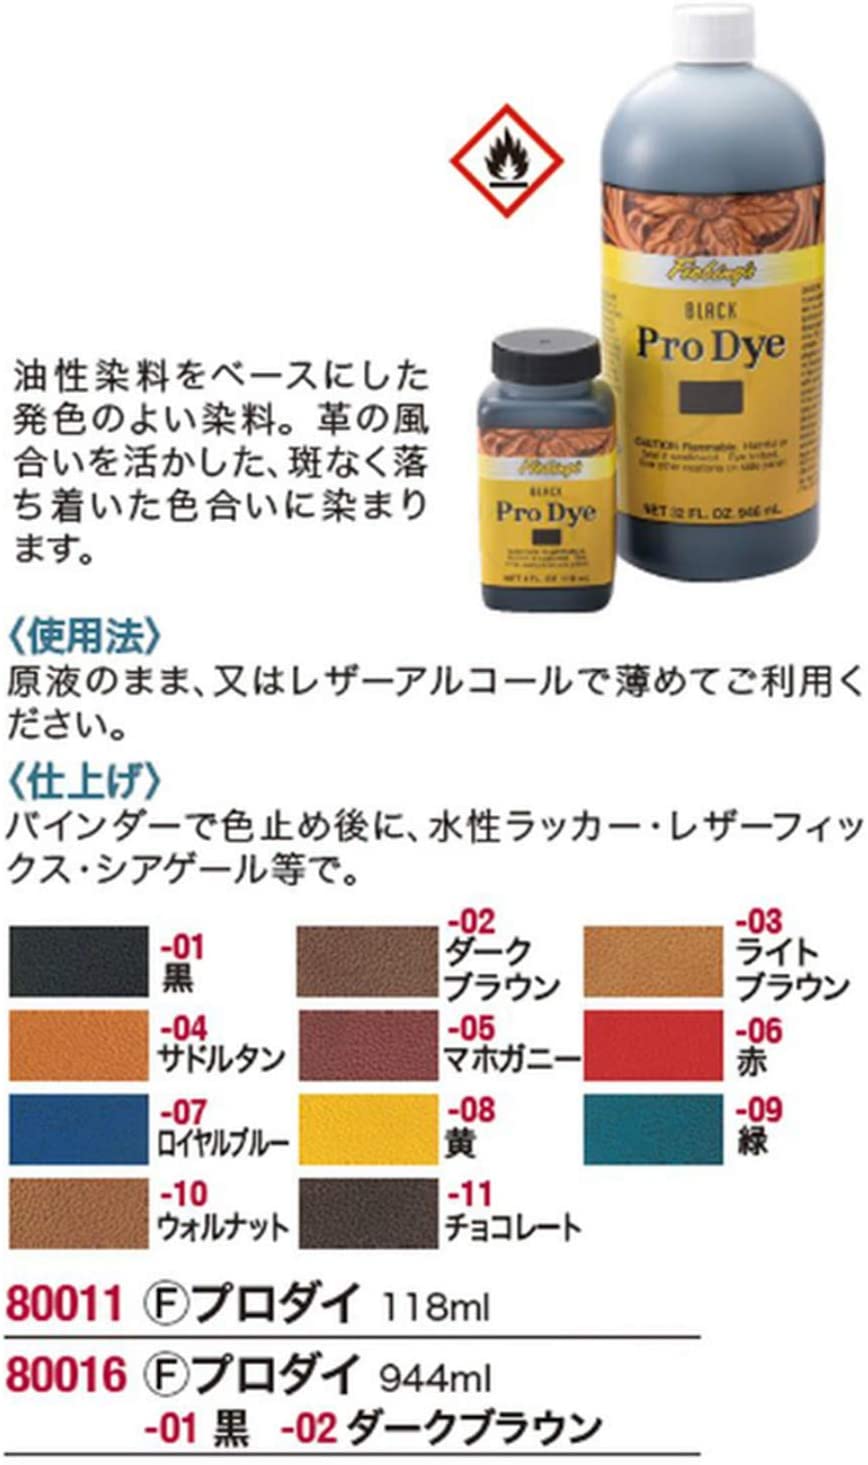 Fiebing's Pro Dye - Walnut